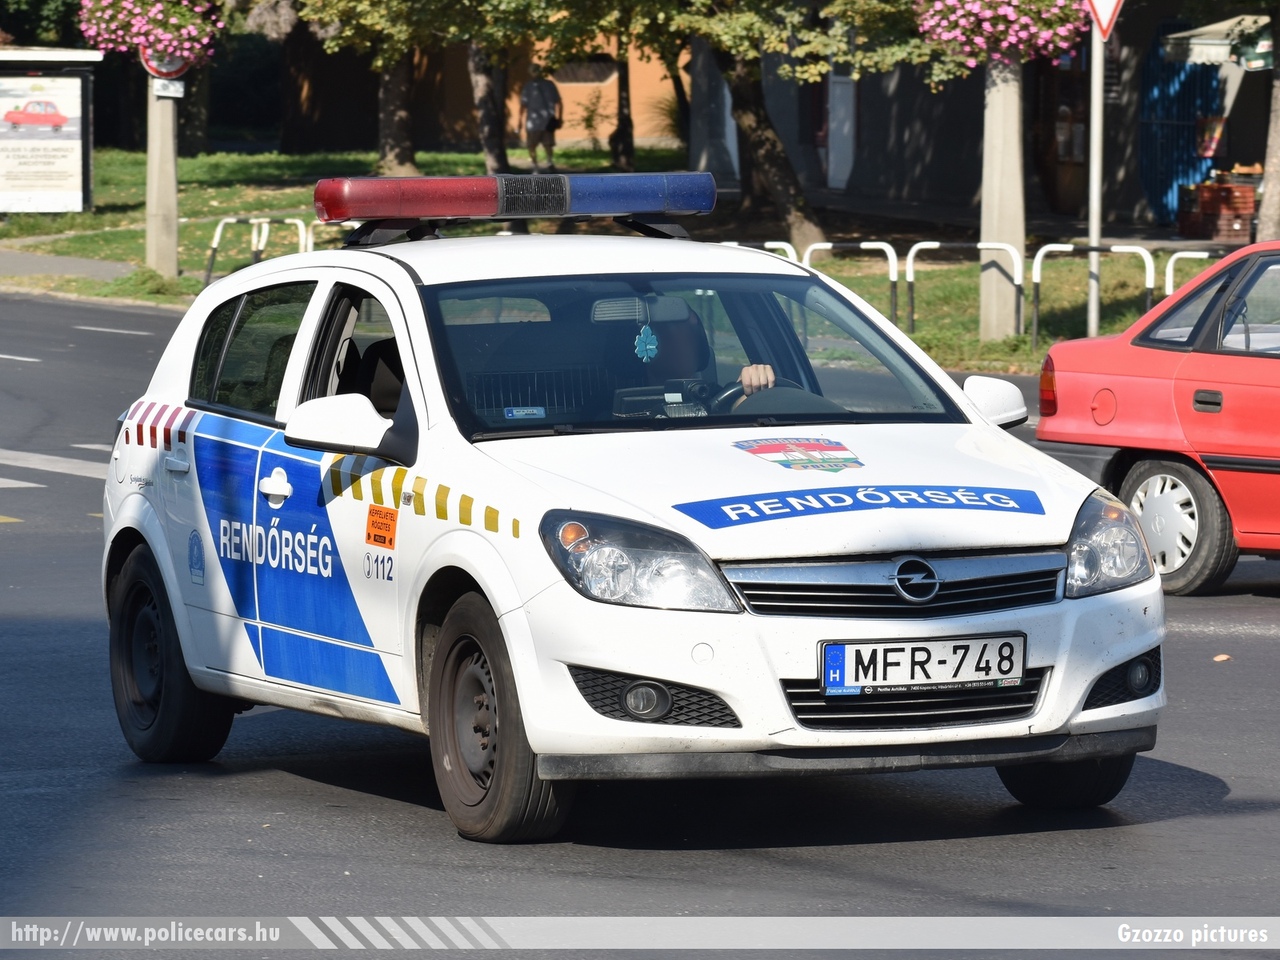 Opel Astra H, fotó: Gzozzo pictures
Keywords: magyar Magyarország rendőr rendőrautó rendőrség Hungary hungarian police policecar MFR-748